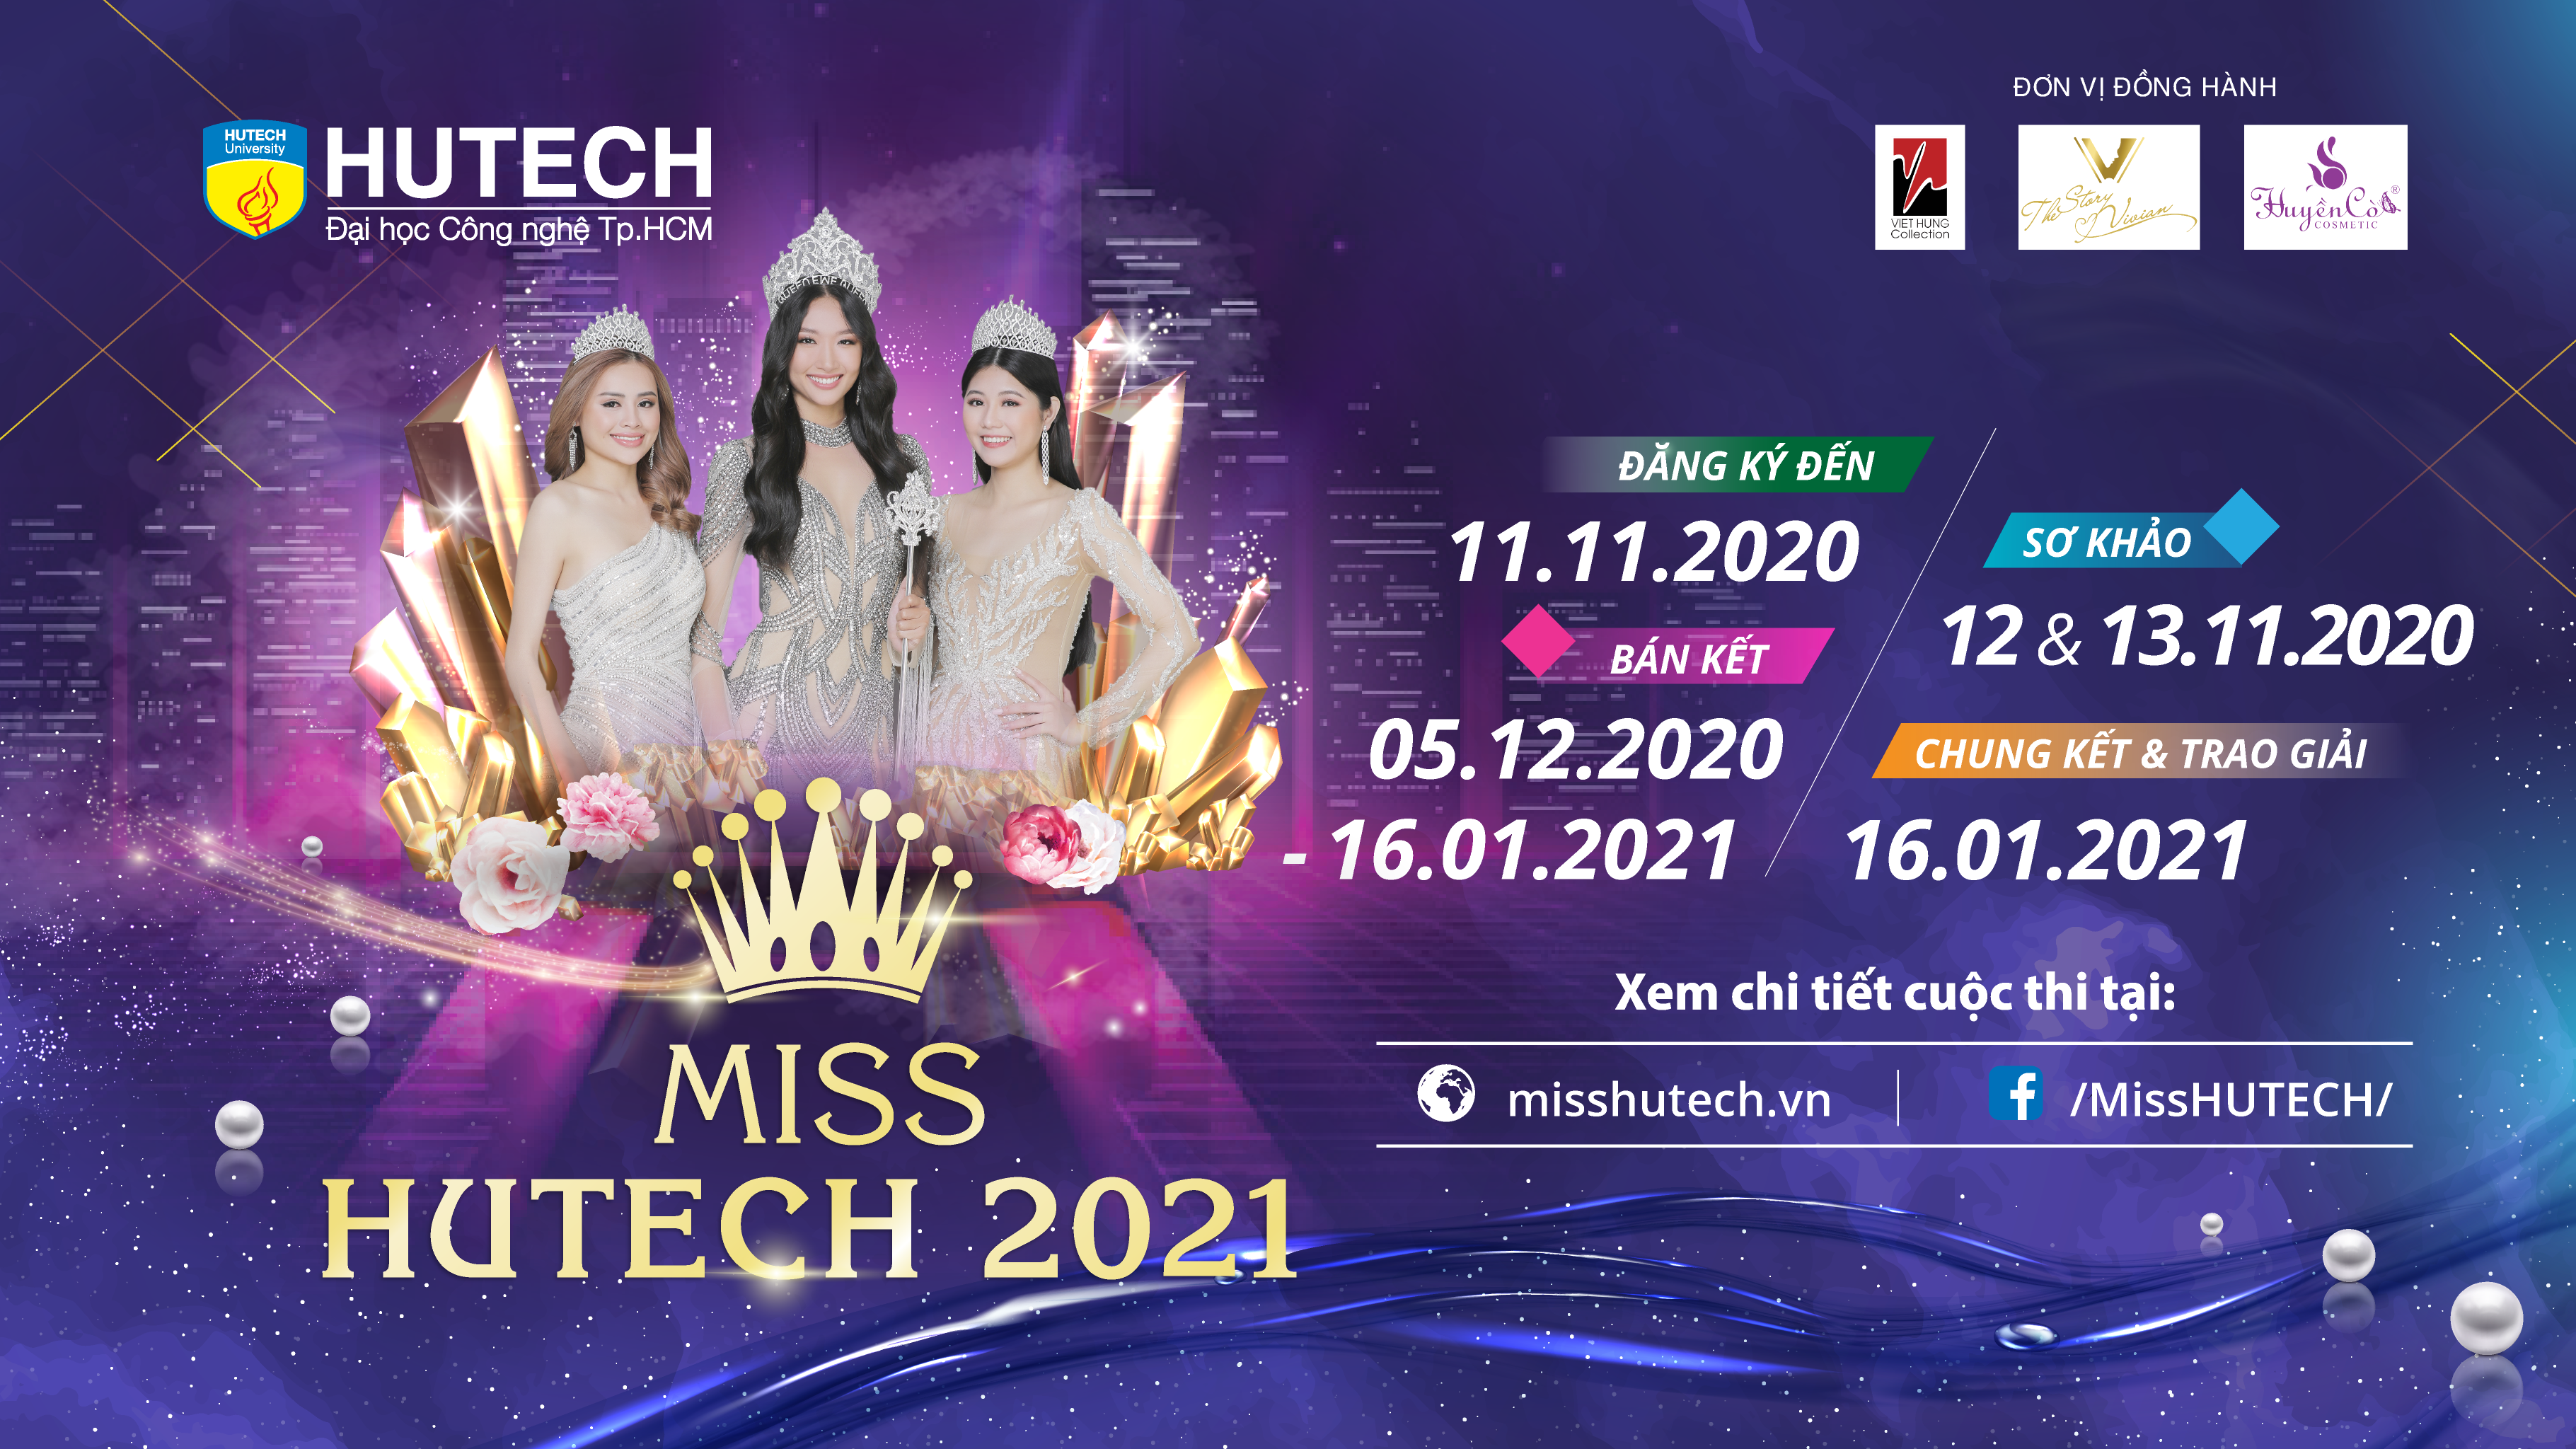 Thể lệ Bình chọn Miss HUTECH 2021 108